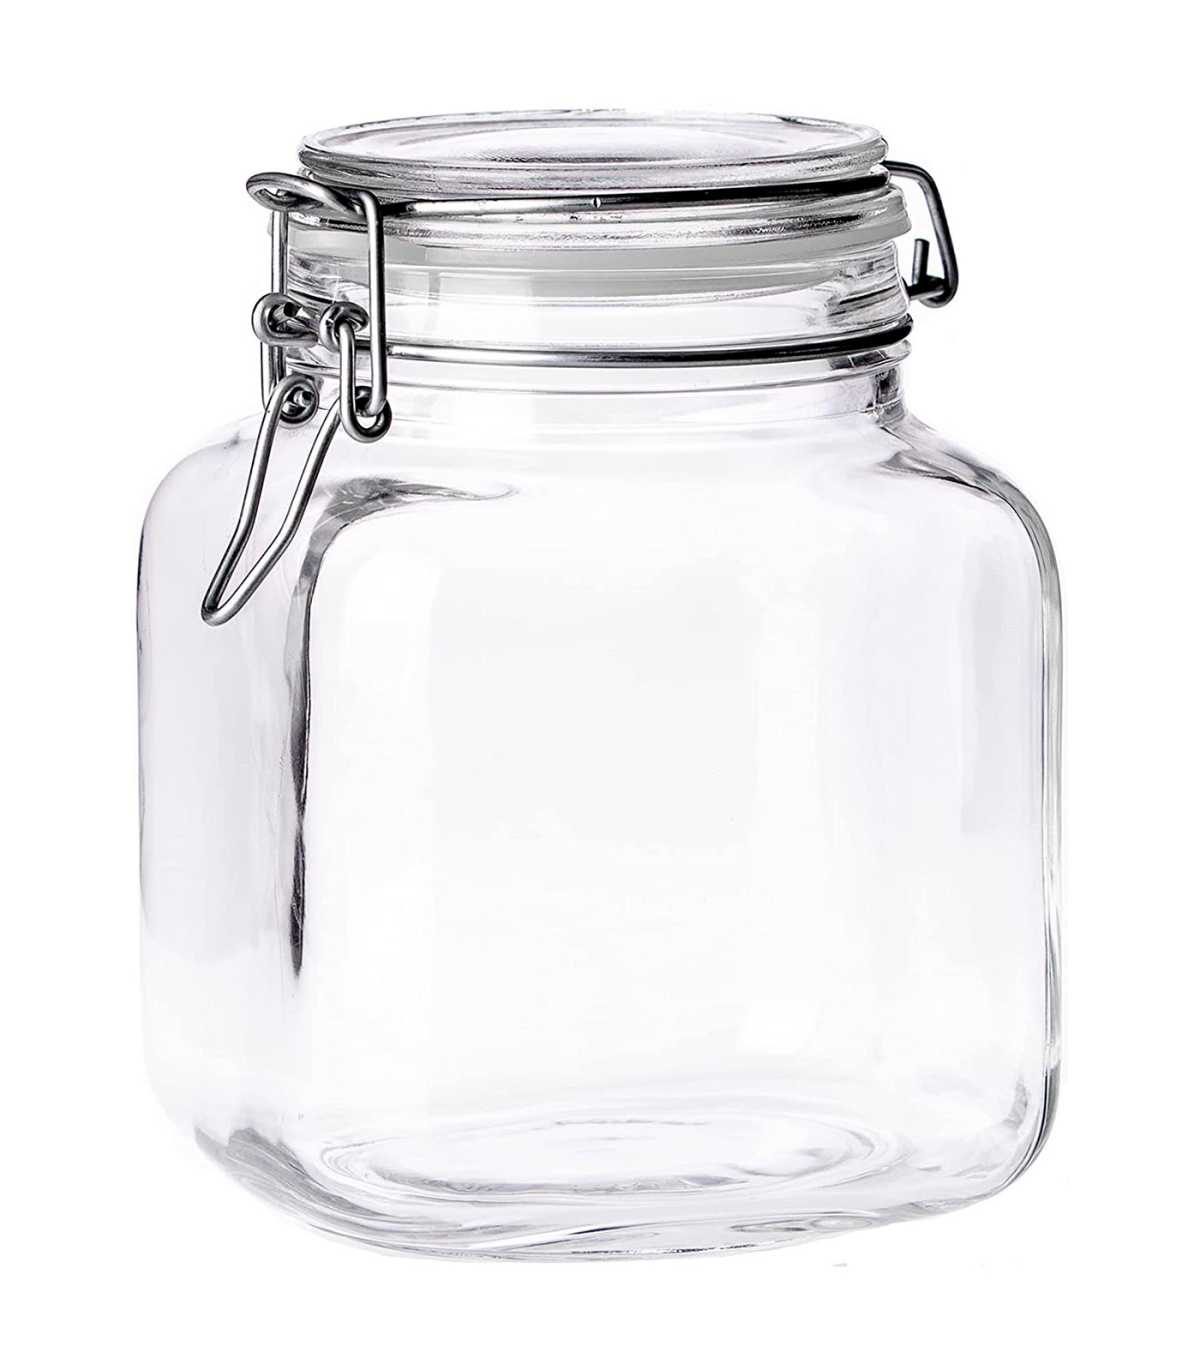 Tradineur - Tarro hermético de vidrio, cierre metálico y junta de goma, bote,  frasco multiusos para alimentos, conservas, legumb